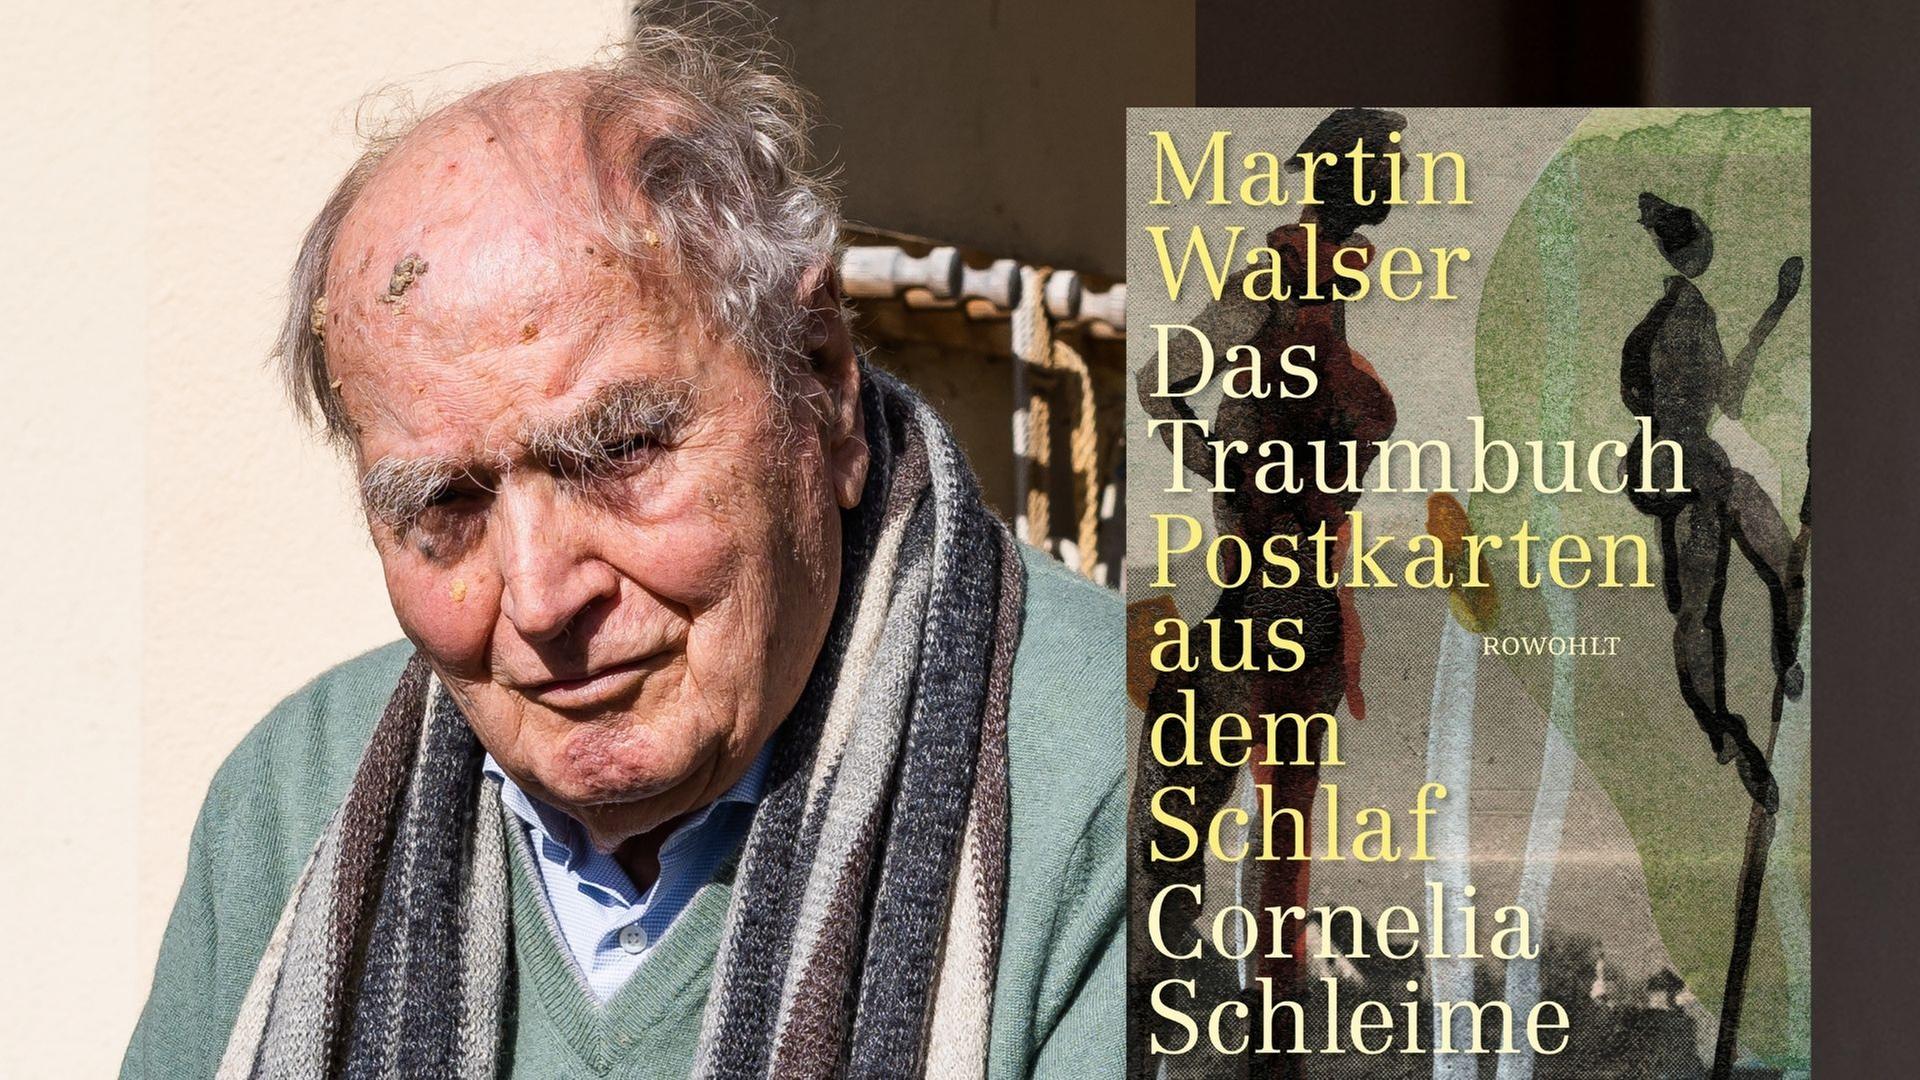 Der Autor Martin Walser und sein "Traumbuch. Postkarten aus dem Schlaf"